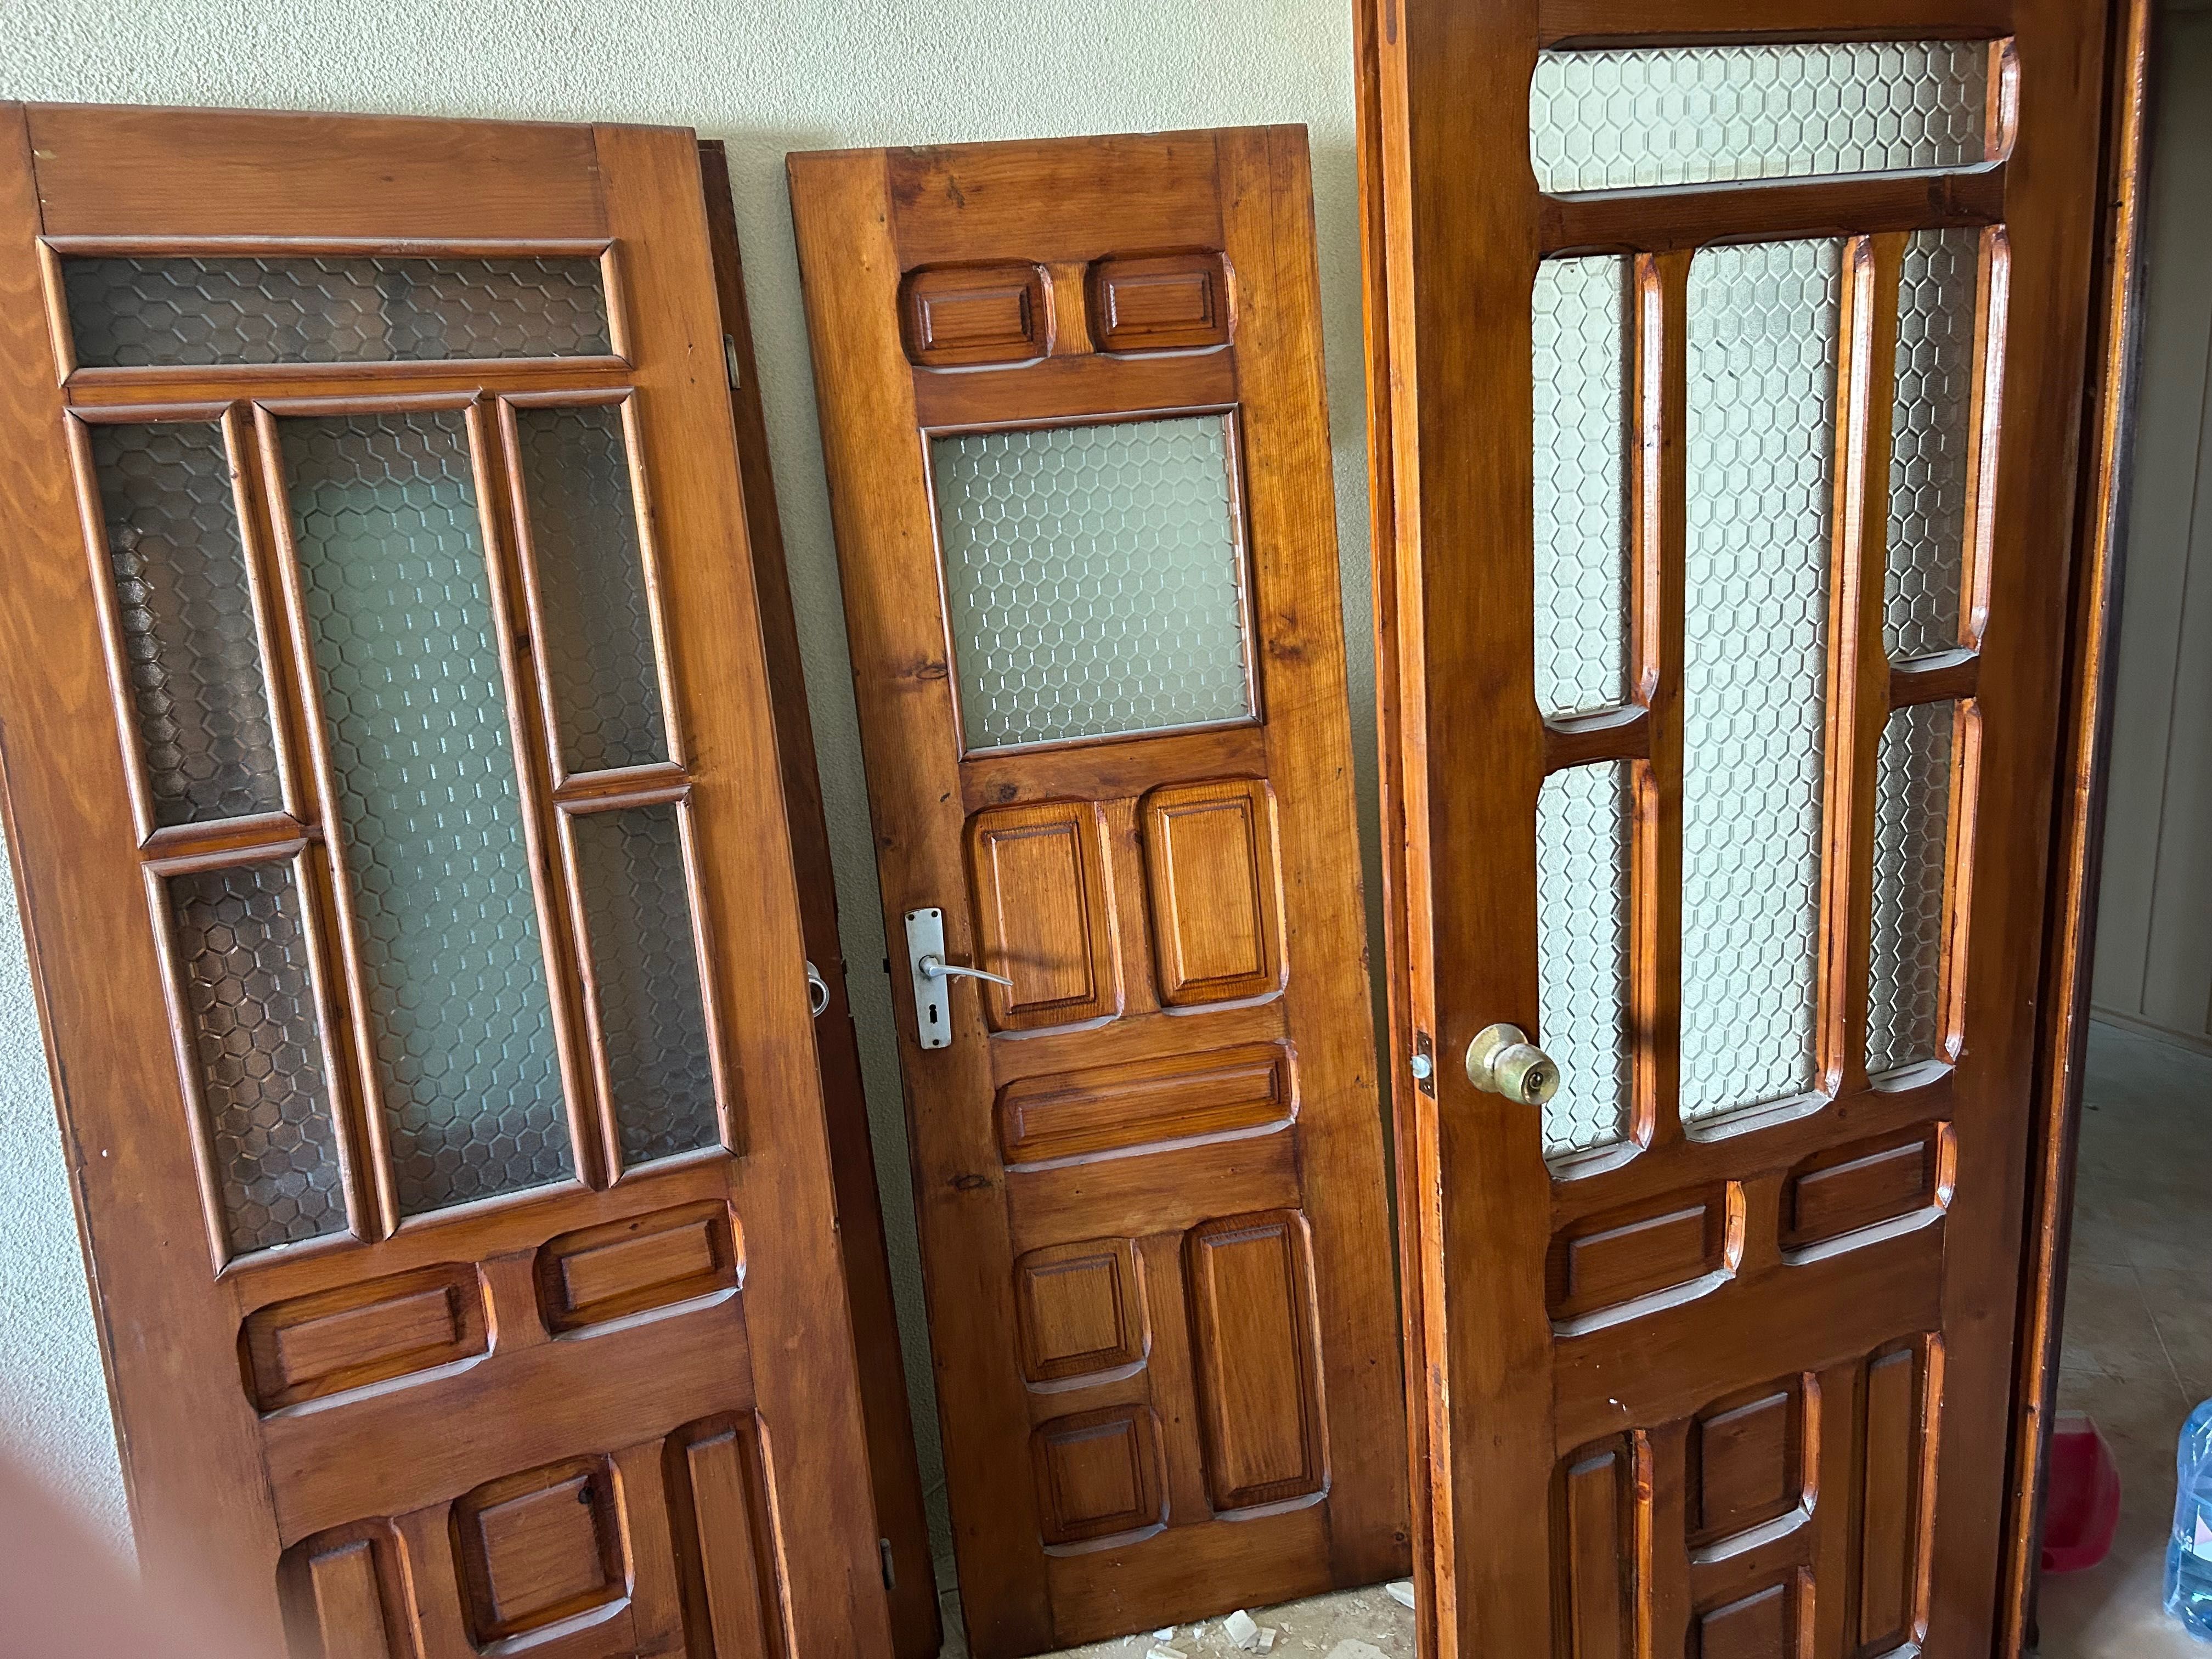 Urgent vând 6 uși second lemn de interior și 1 bucata usa exterior